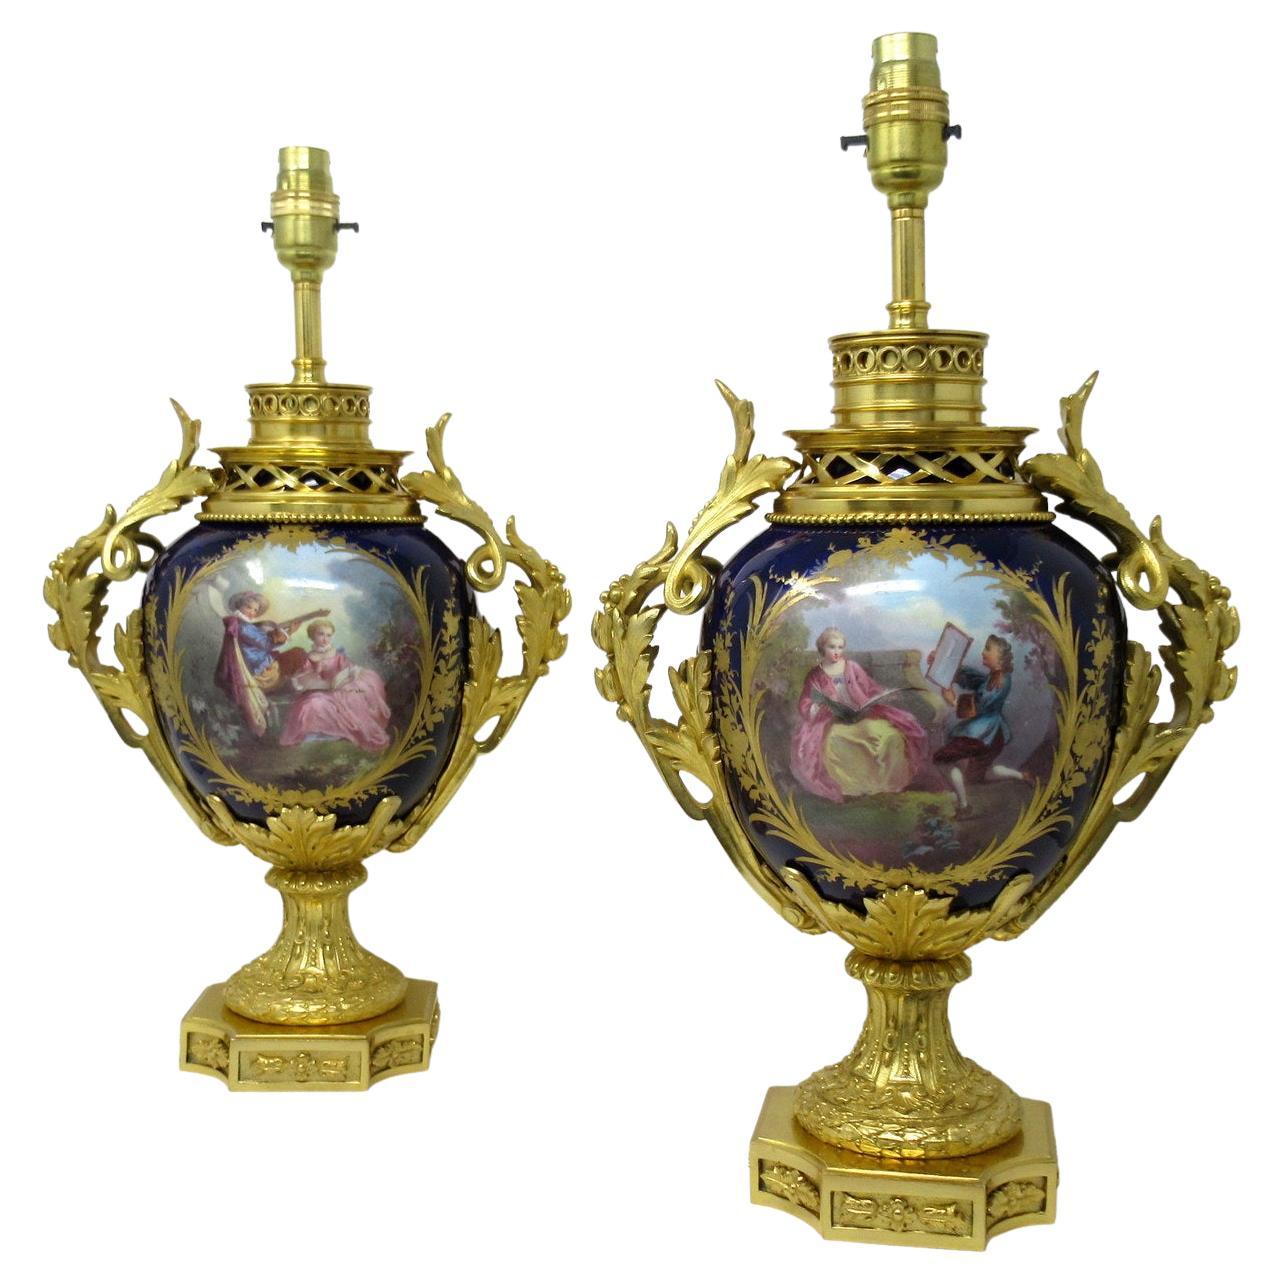 Pair Antique French Sèvres Porcelain Ormolu Gilt Bronze Dore Table Urn Lamps 